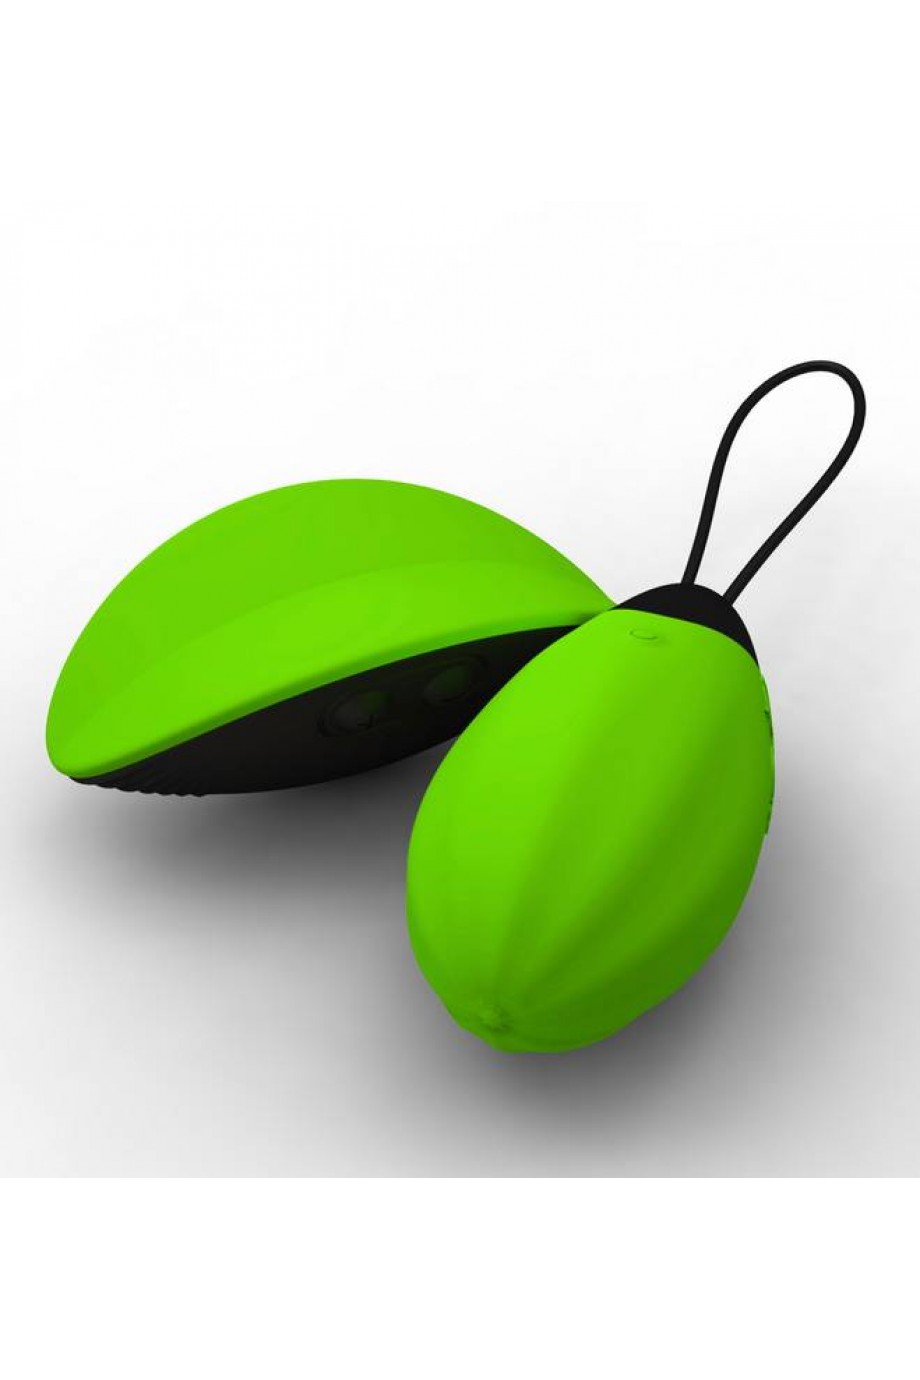 Виброяйцо Bibi зеленое с дист. управлением 5 см